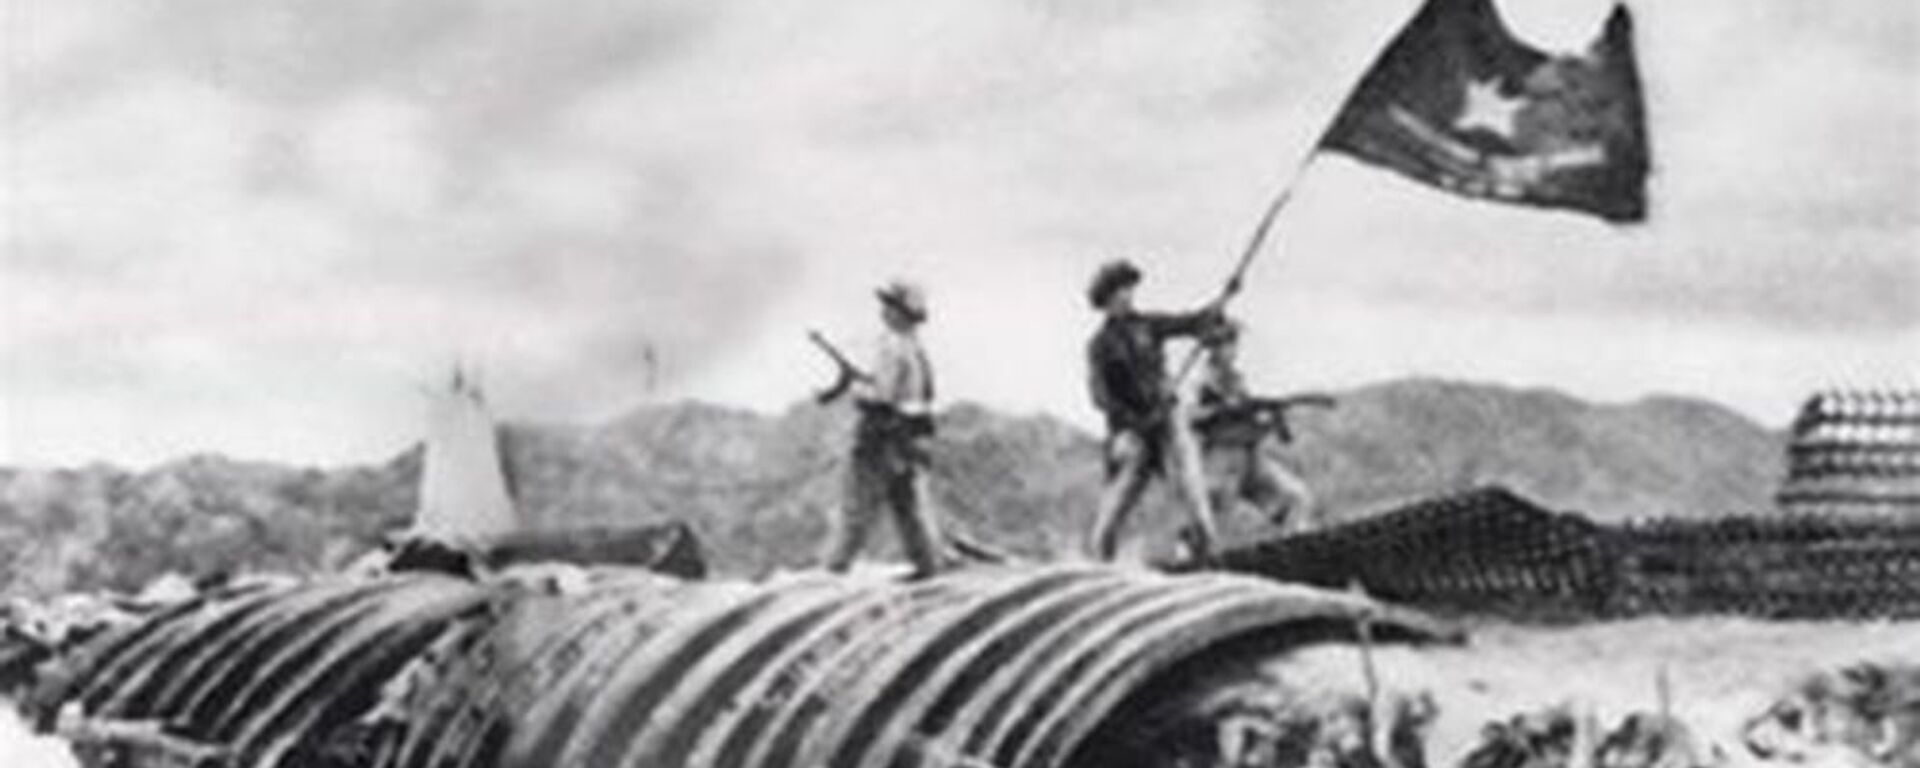 Bộ đội Việt Nam cắm cờ trên cứ điểm của Pháp. Trận Điện Biên Phủ, năm 1954 - Sputnik Việt Nam, 1920, 07.05.2018